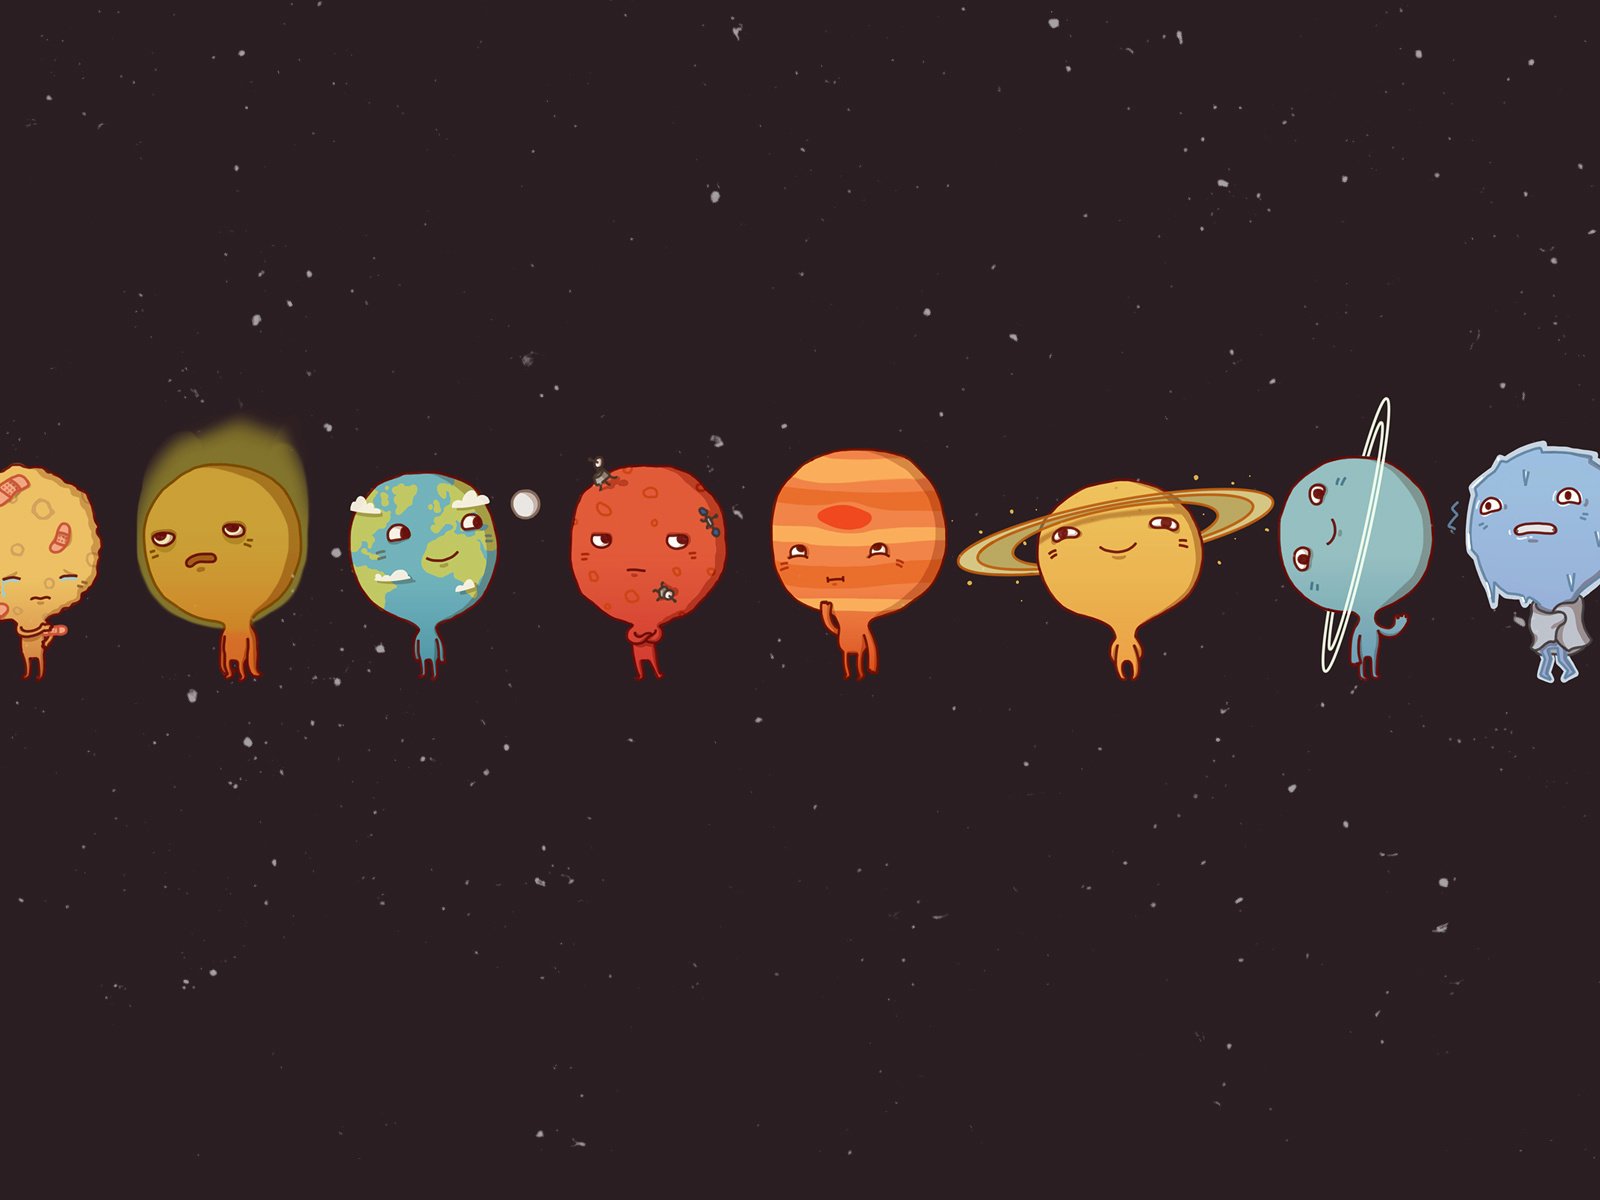 Pluto cartoon planet. Космос планеты для детей. Планеты солнечной системы. Милые планеты. Планеты солнечной системы для детей.